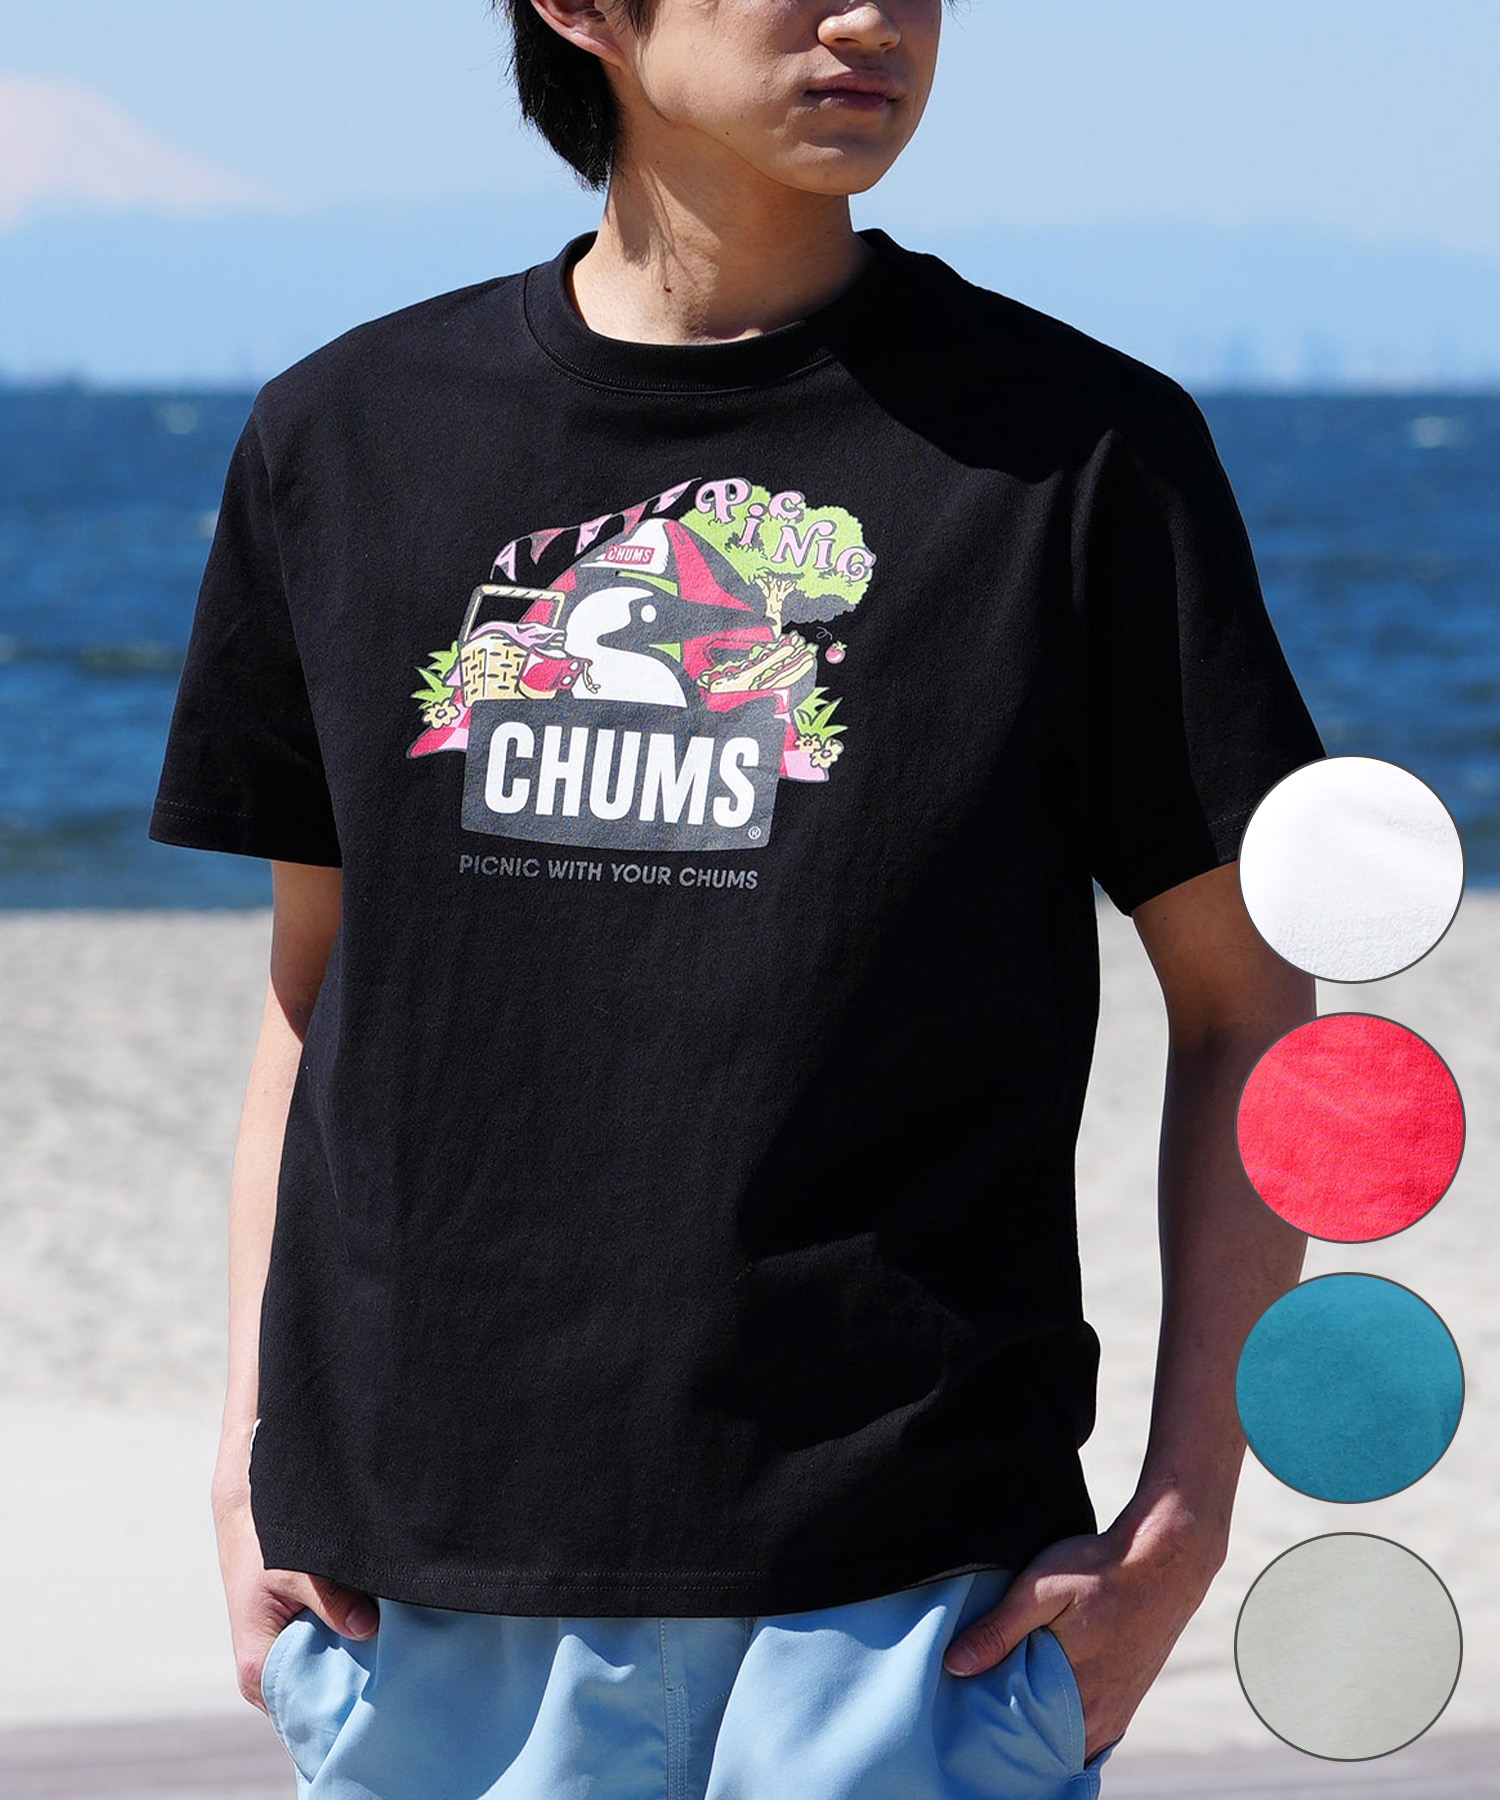 【マトメガイ対象】CHUMS チャムス メンズ Tシャツ 半袖 ブービーバード ピクニックモチーフ フロントプリント クルーネック CH01-2347(R001-M)